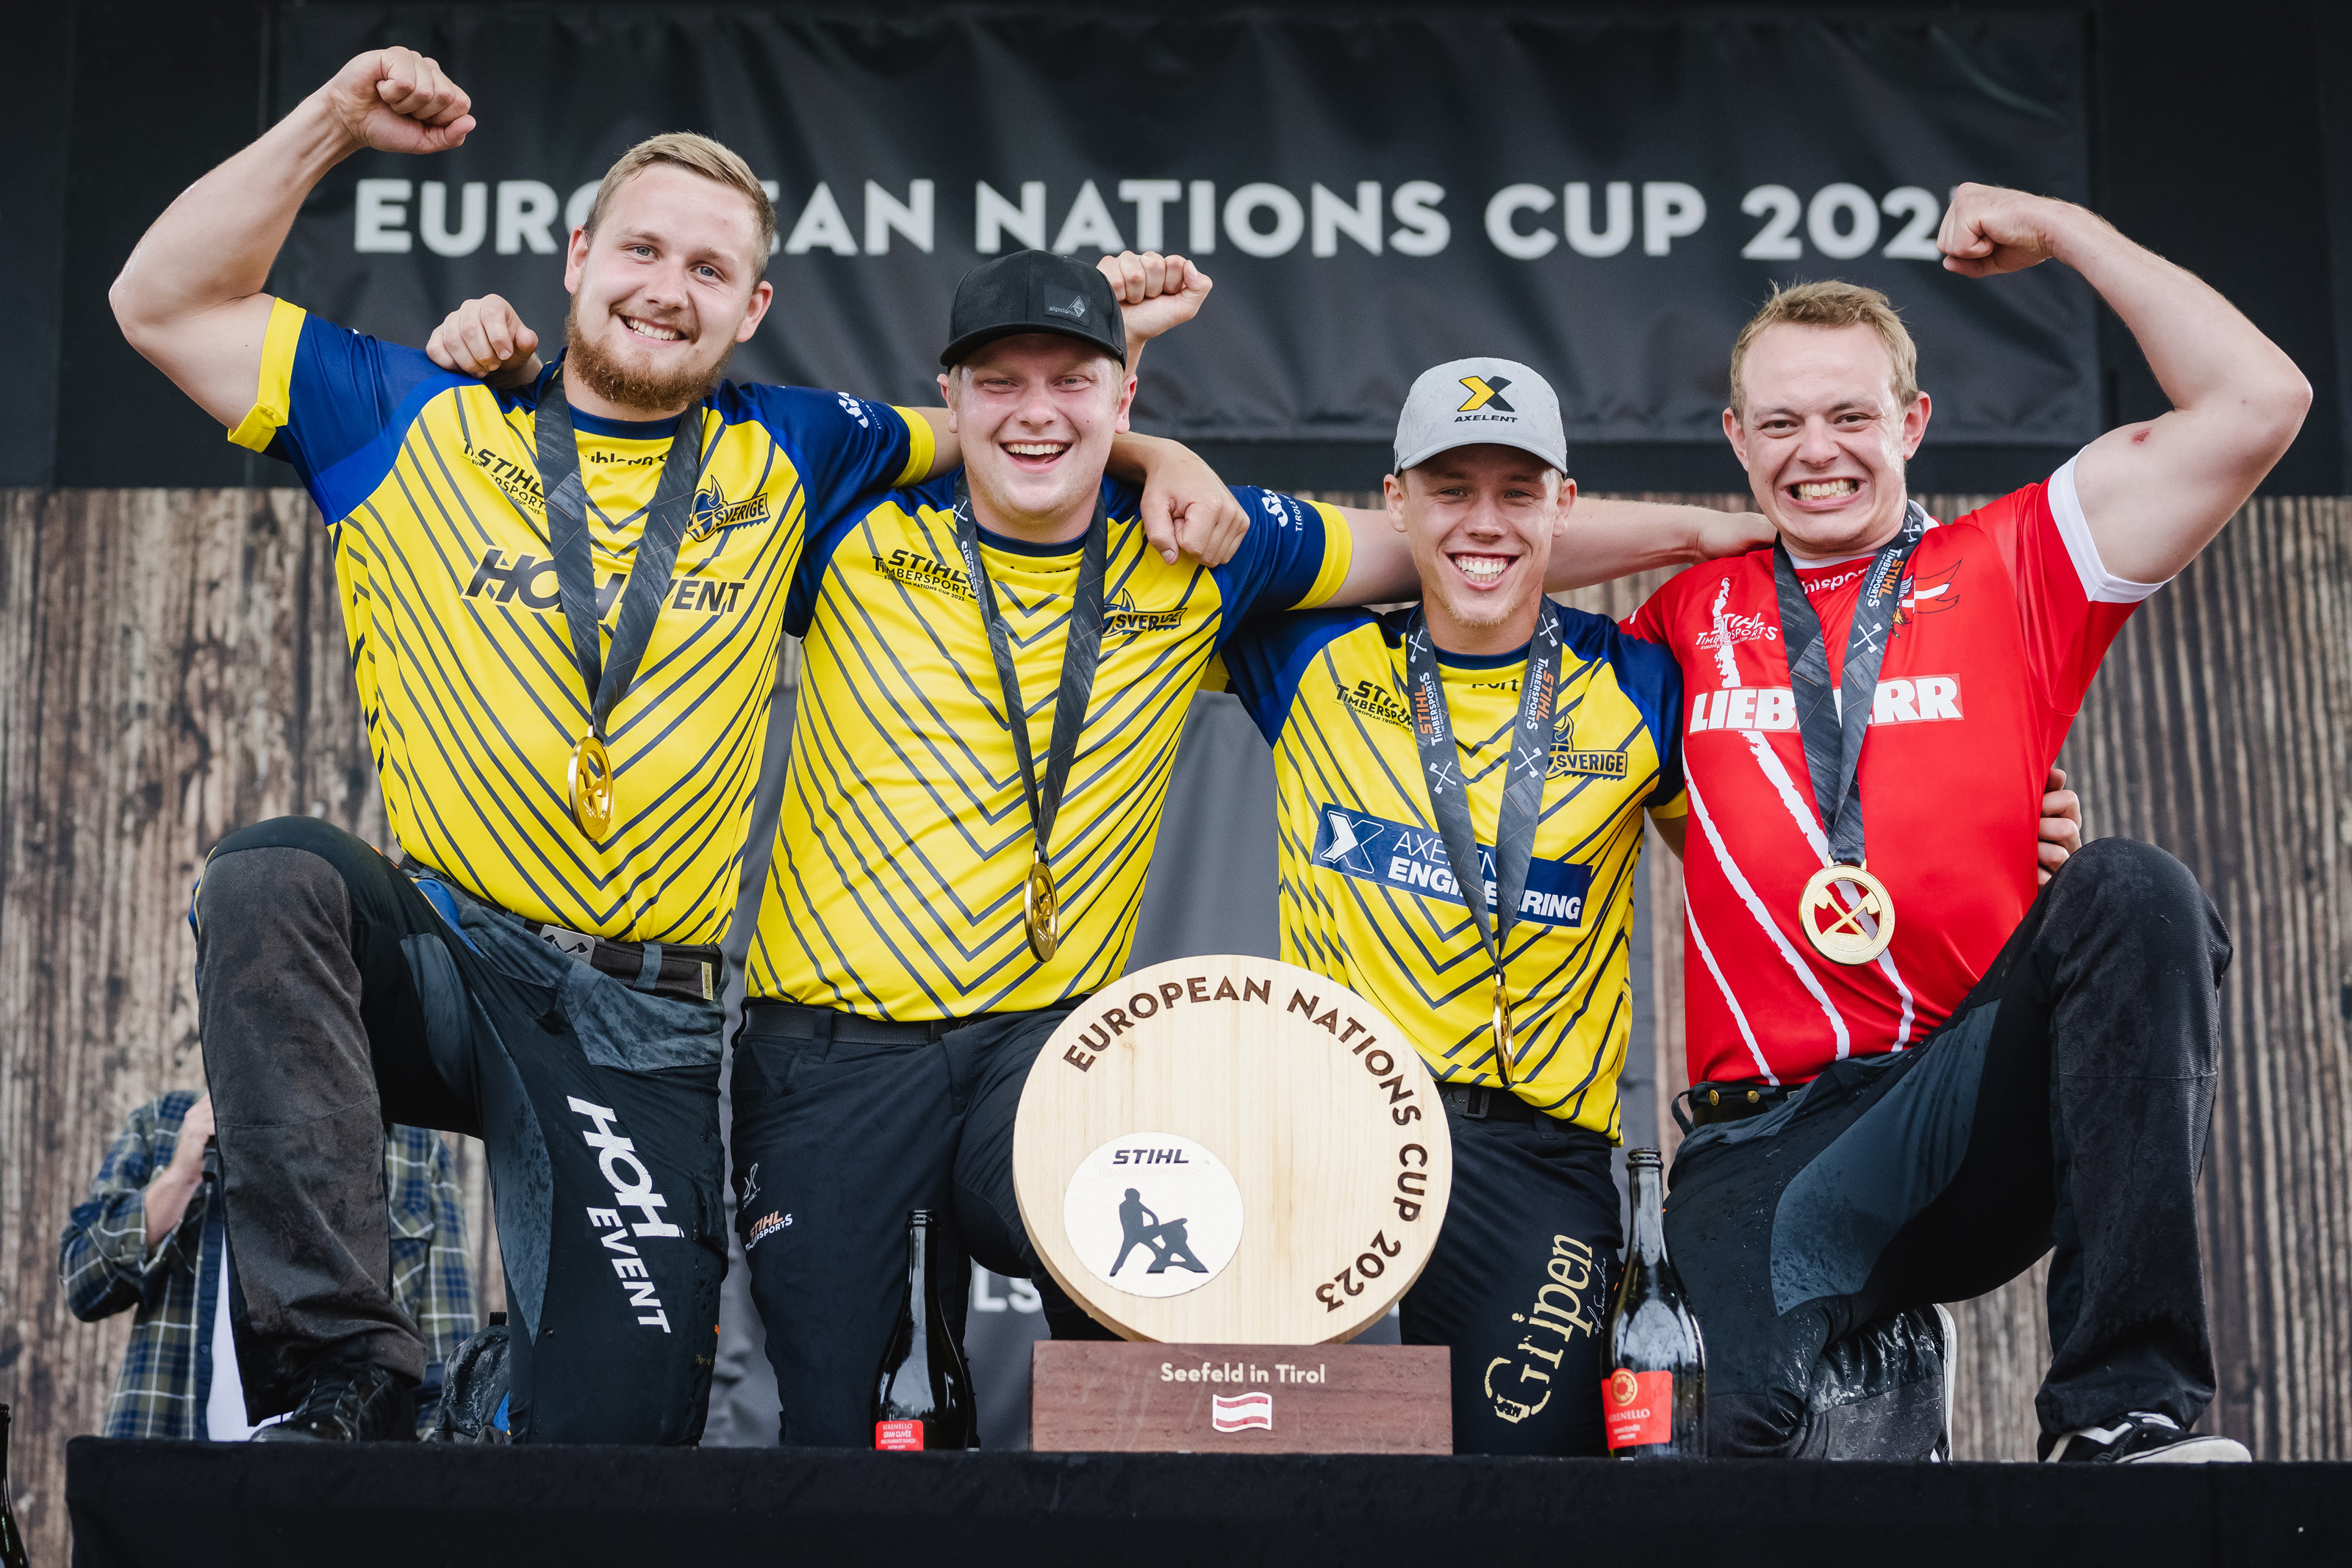 Team Skandinavien um Emil Hansson, Edvin Karlsson, Ferry Svan und Esben Pedersen (v.l.n.r.) verteidigt in Seefeld den European Nations Cup.